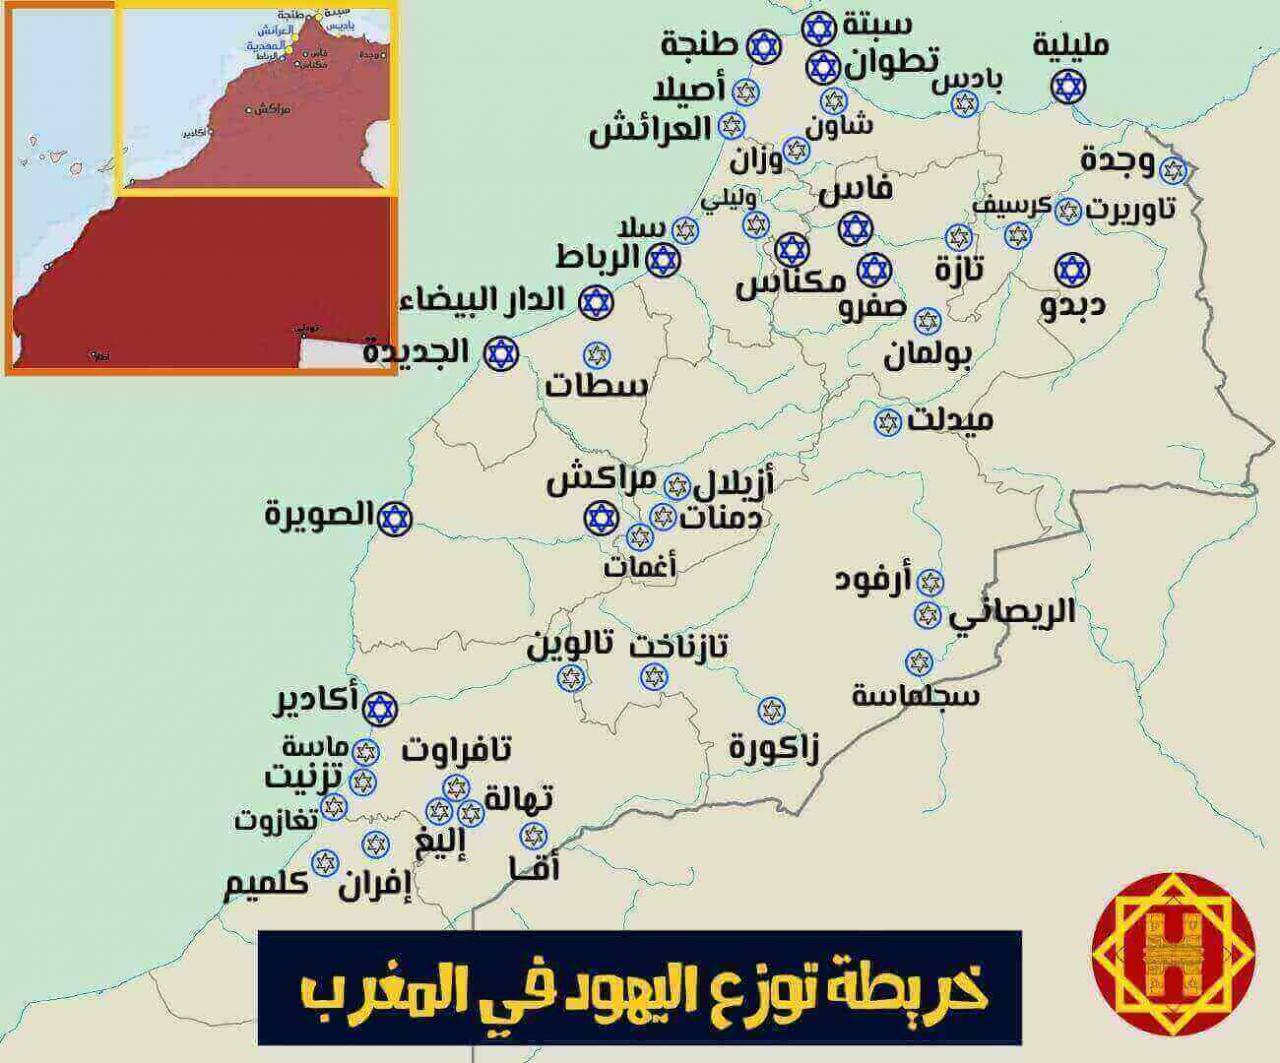 الخريطه المدن المغربية تعالوا تلك خريطة نشاهد